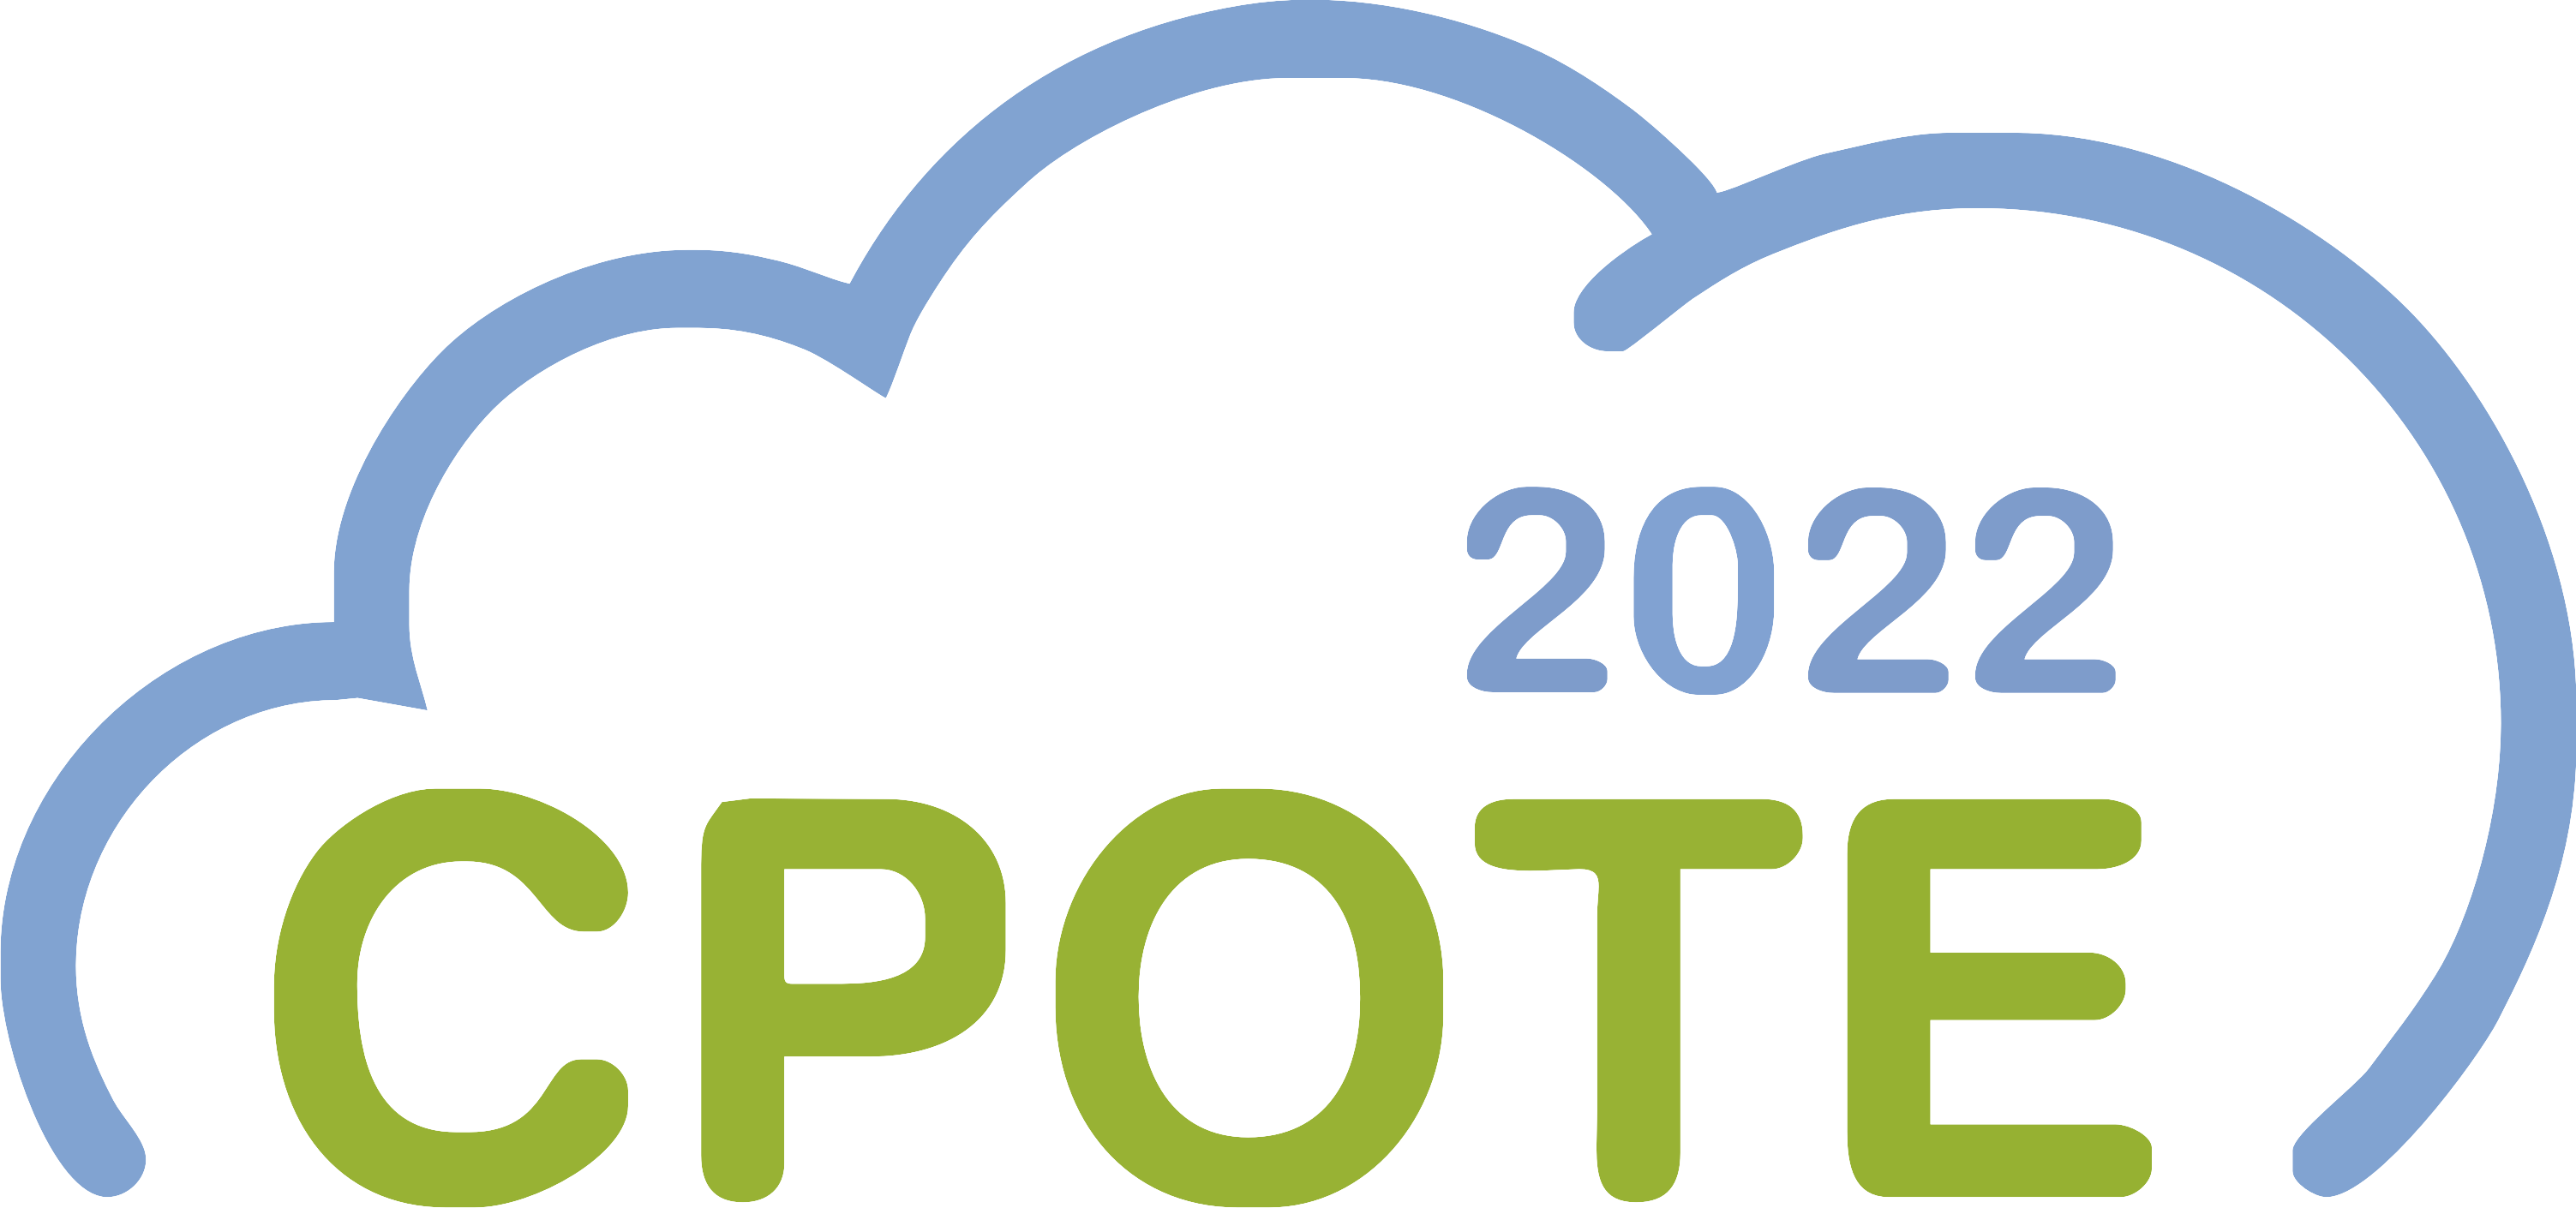 CPOTE2022 Logo